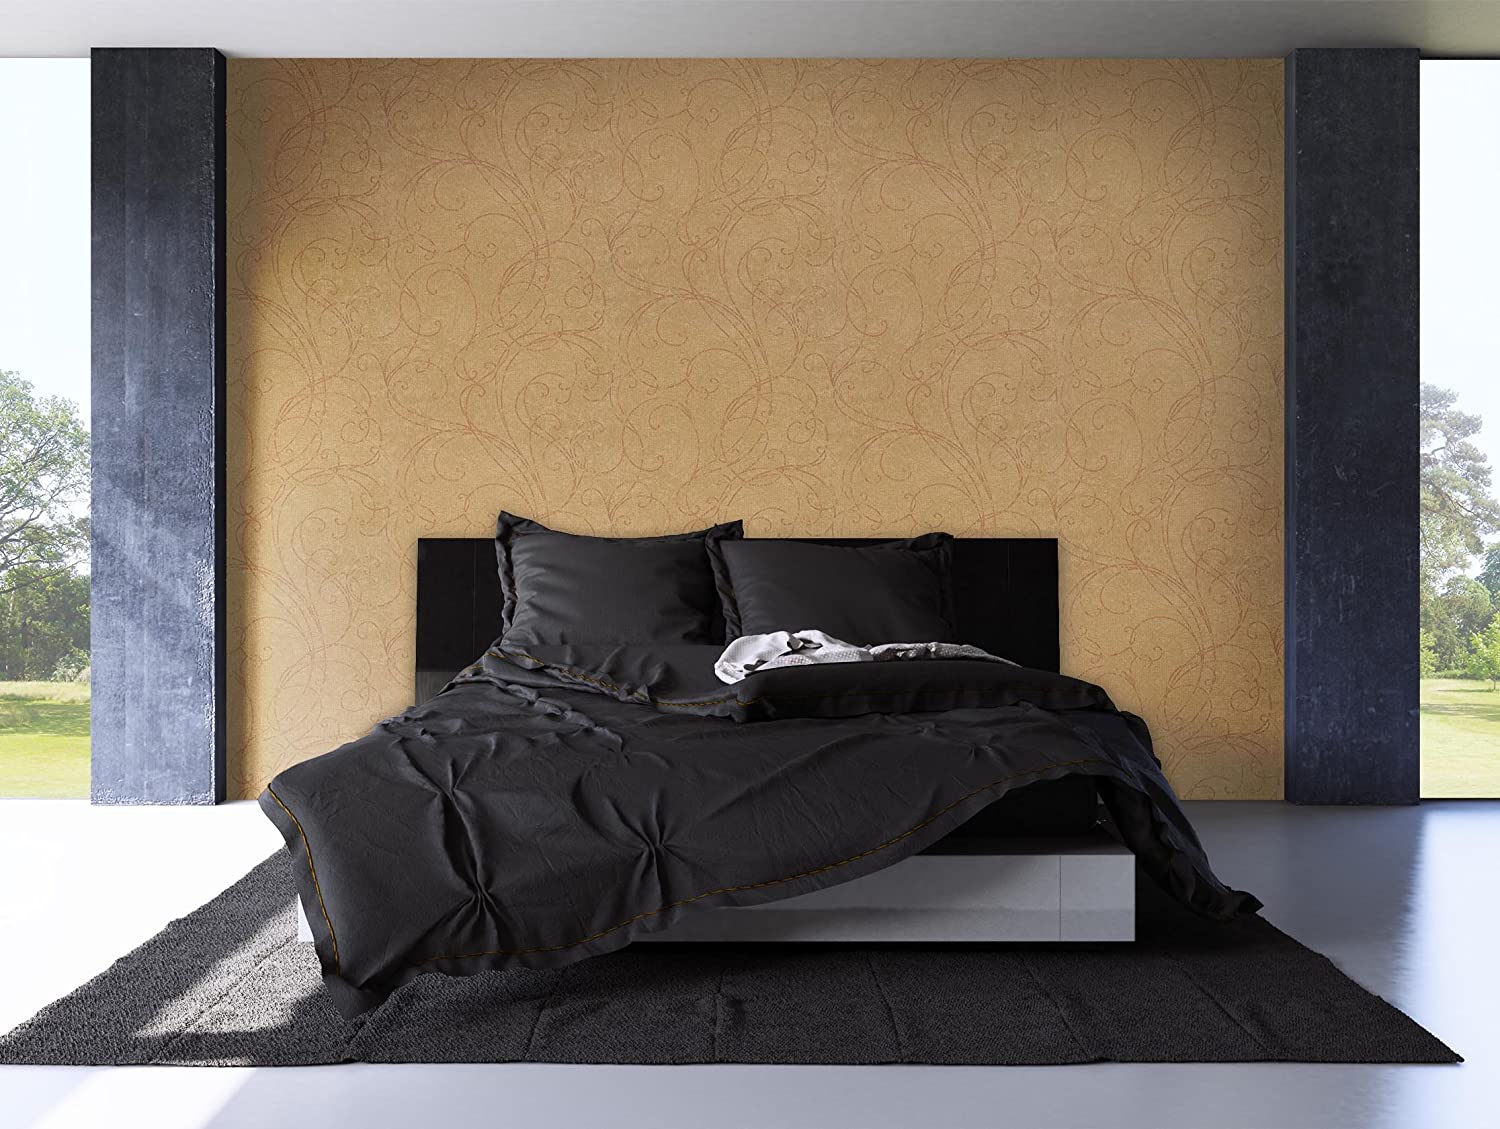 Newroom Wallpaper Gold Geschlängelt Non-Woven Wallpaper Non-Woven Modern Design Look with Stripes Wallpaper Guide